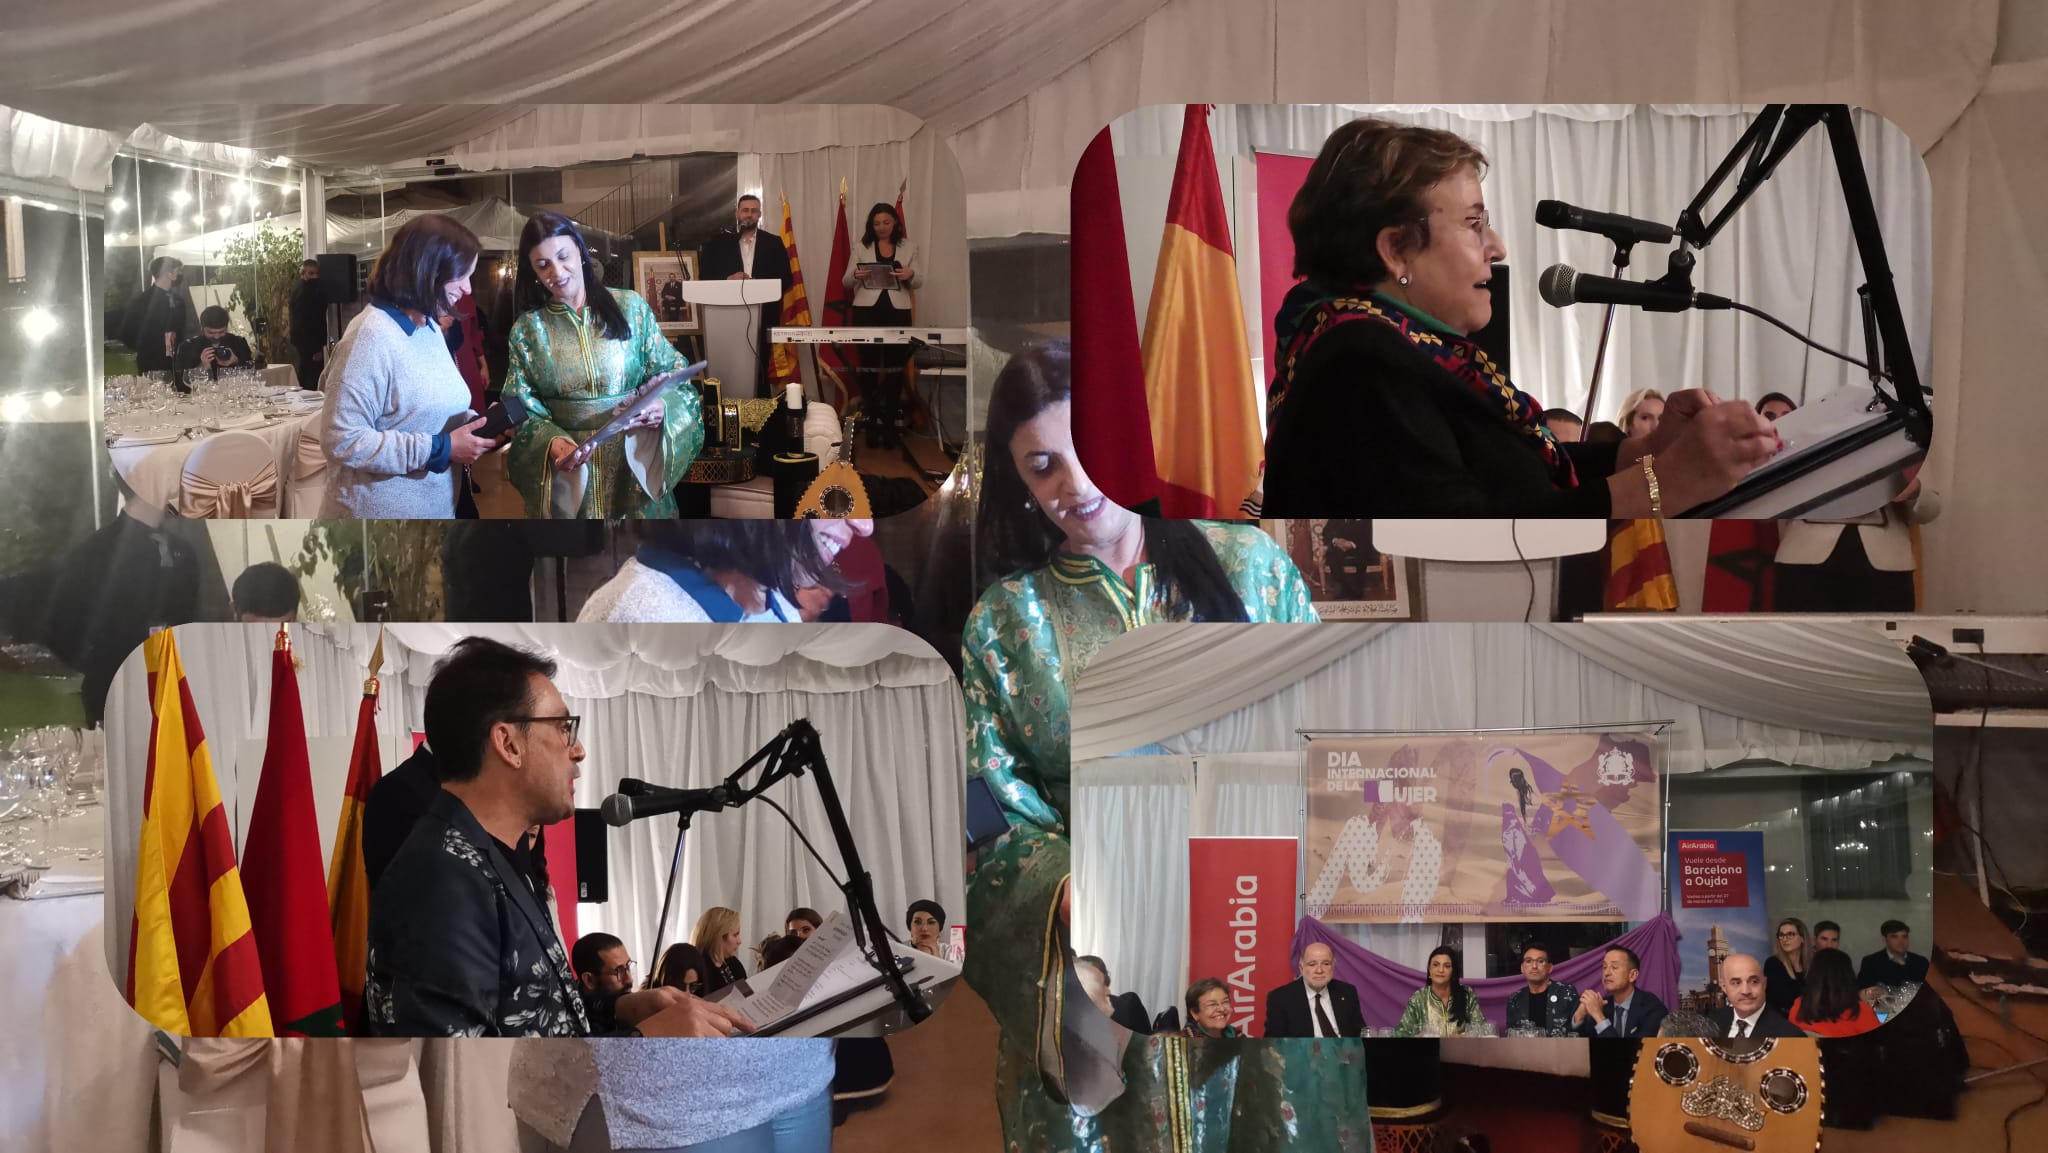 عيد المرأة..حفل استثنائي وخطاب رائع وتعريف قيمة المرأة المغربية أمام حضور وازن من طراغونة الإسبانية